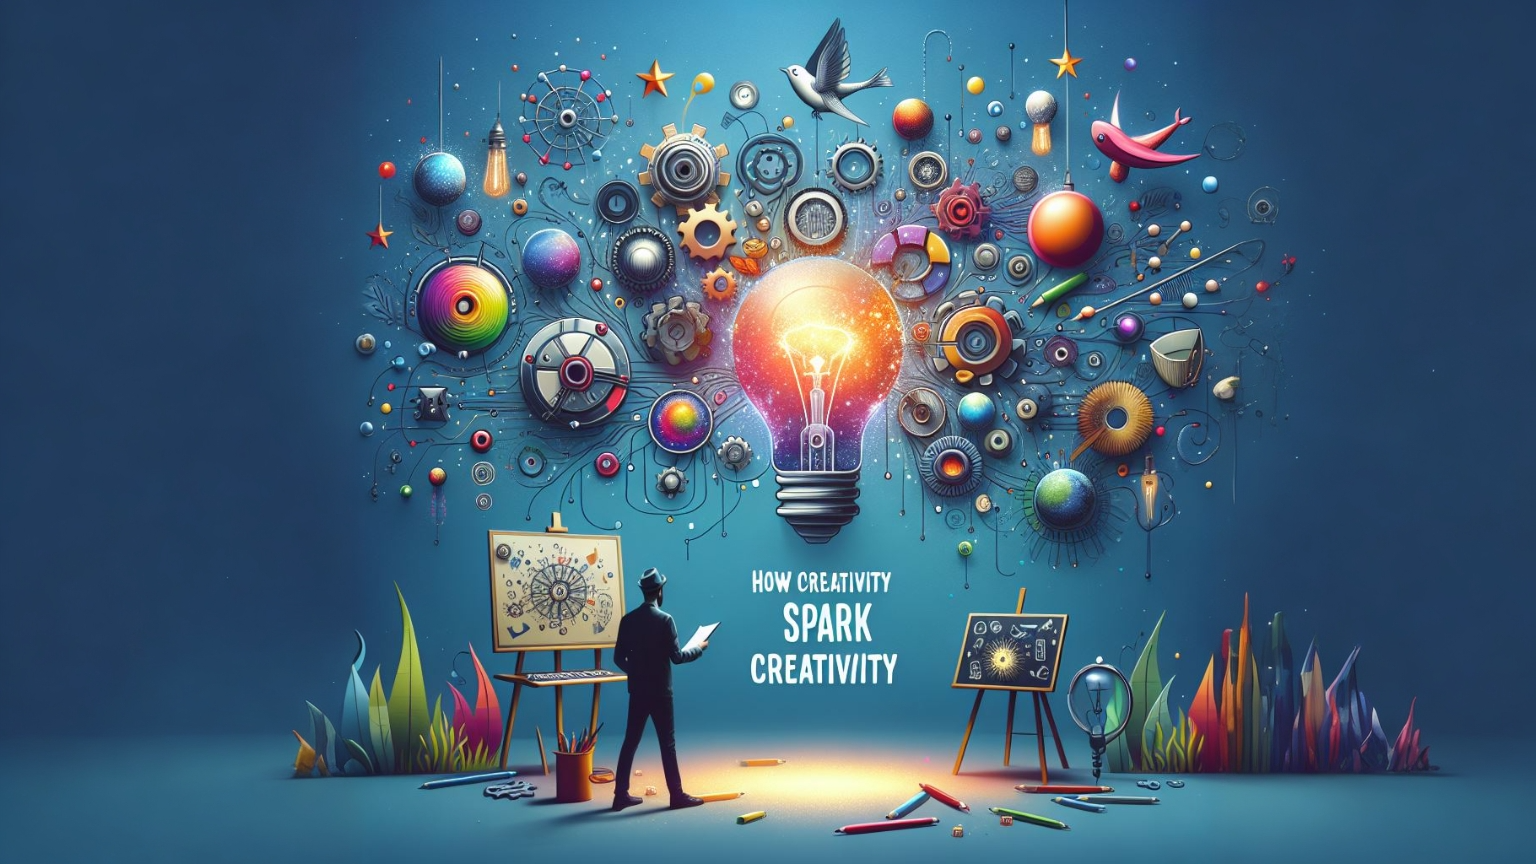 How Creativity Can Spark More Creativity